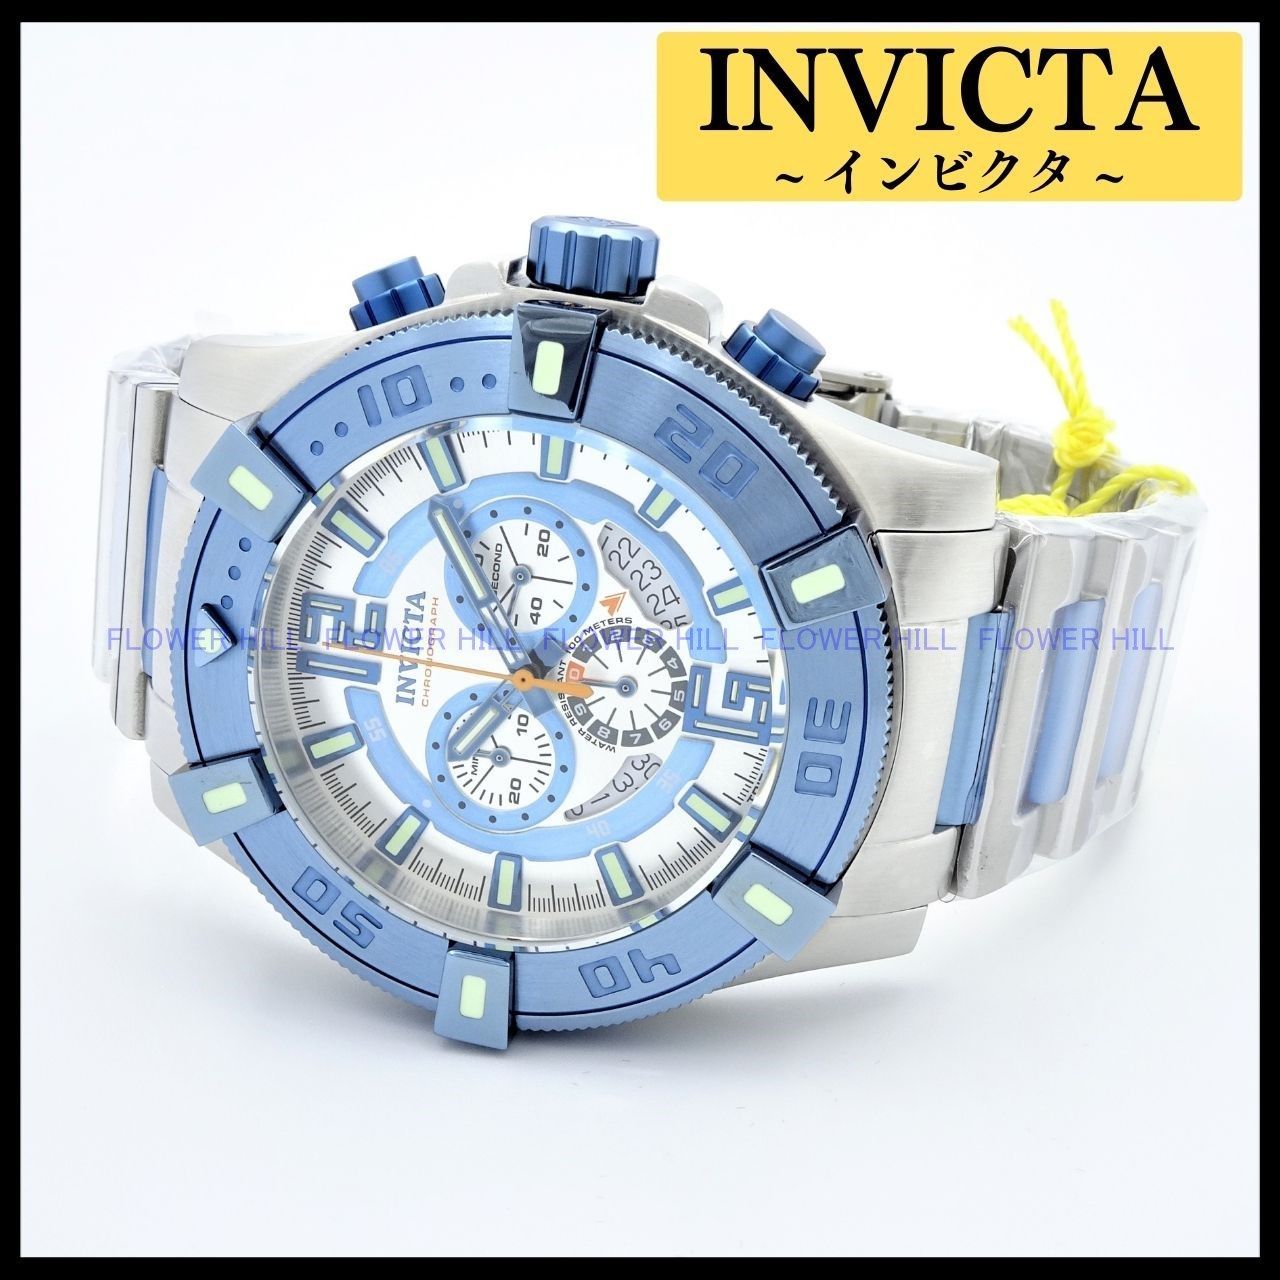 アナログ（クォーツ式） INVICTA インビクタ 腕時計 メンズ LUMINARY 38194 クォーツ クロノグラフ スイス製ムーブメント メタルバンド  スチール・ライトブルー